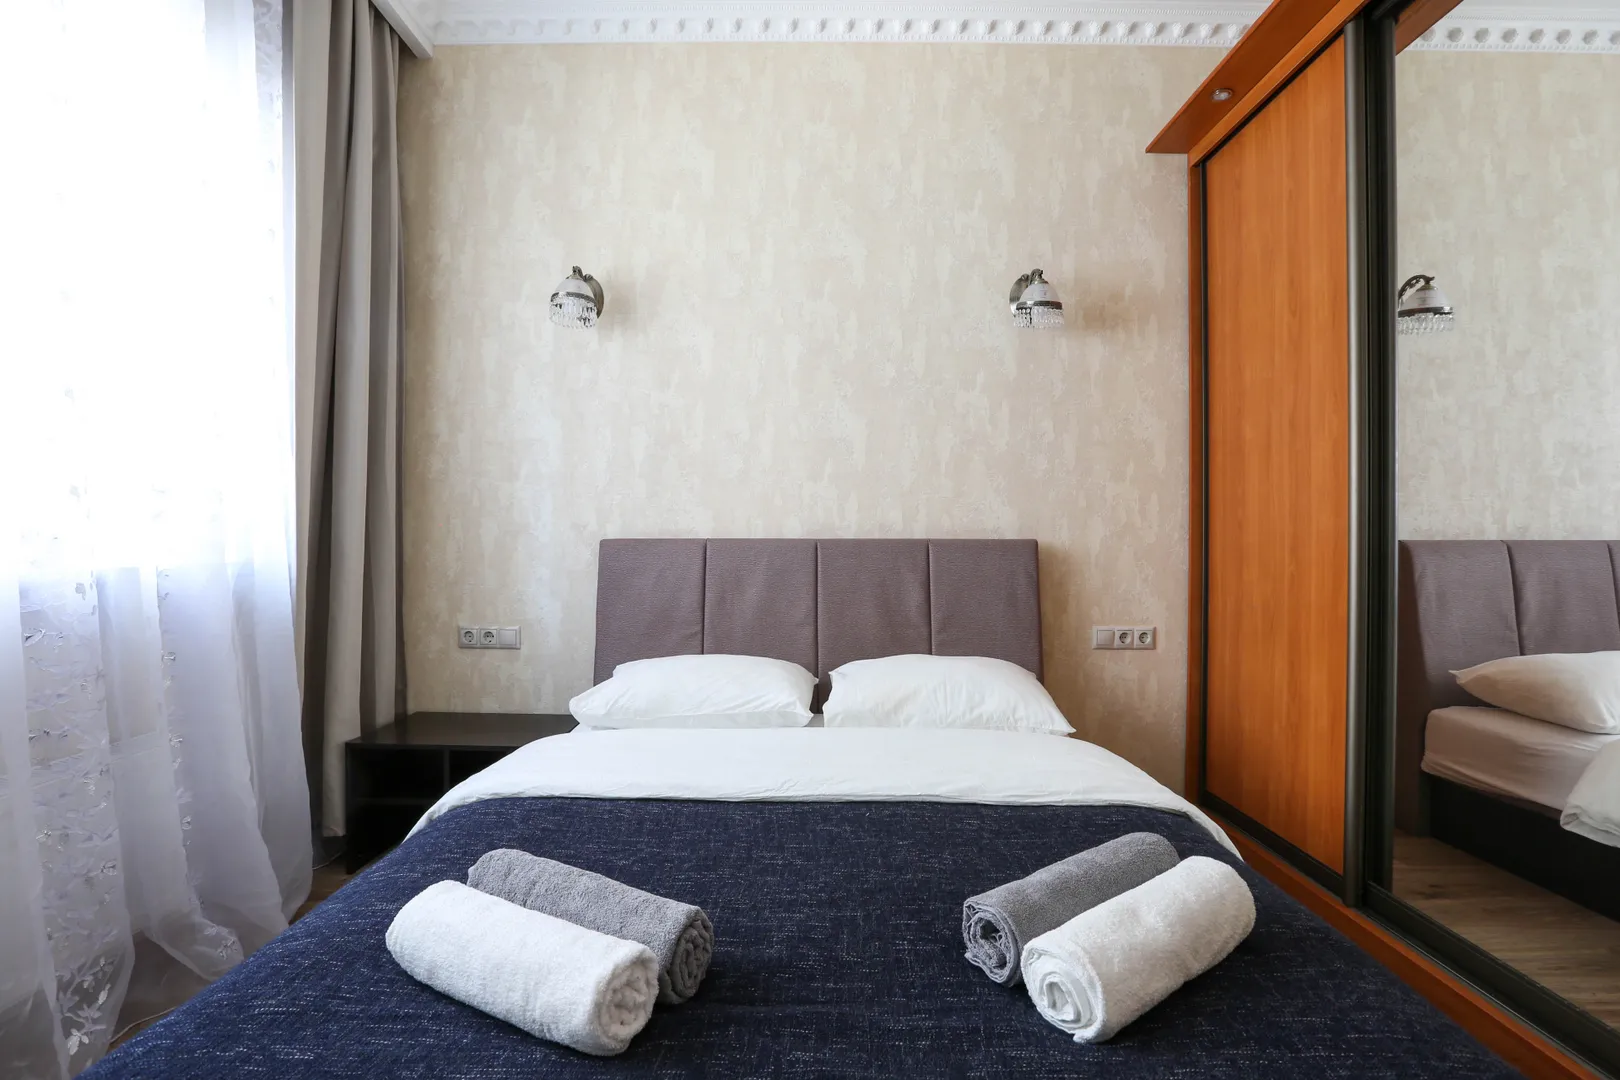 Уютная спальня с качественной кроватью и удобным матрасом. На стене новый ЖК-телевизор, на окнах шторы Blackout  - всё для вашего комфортного сна!